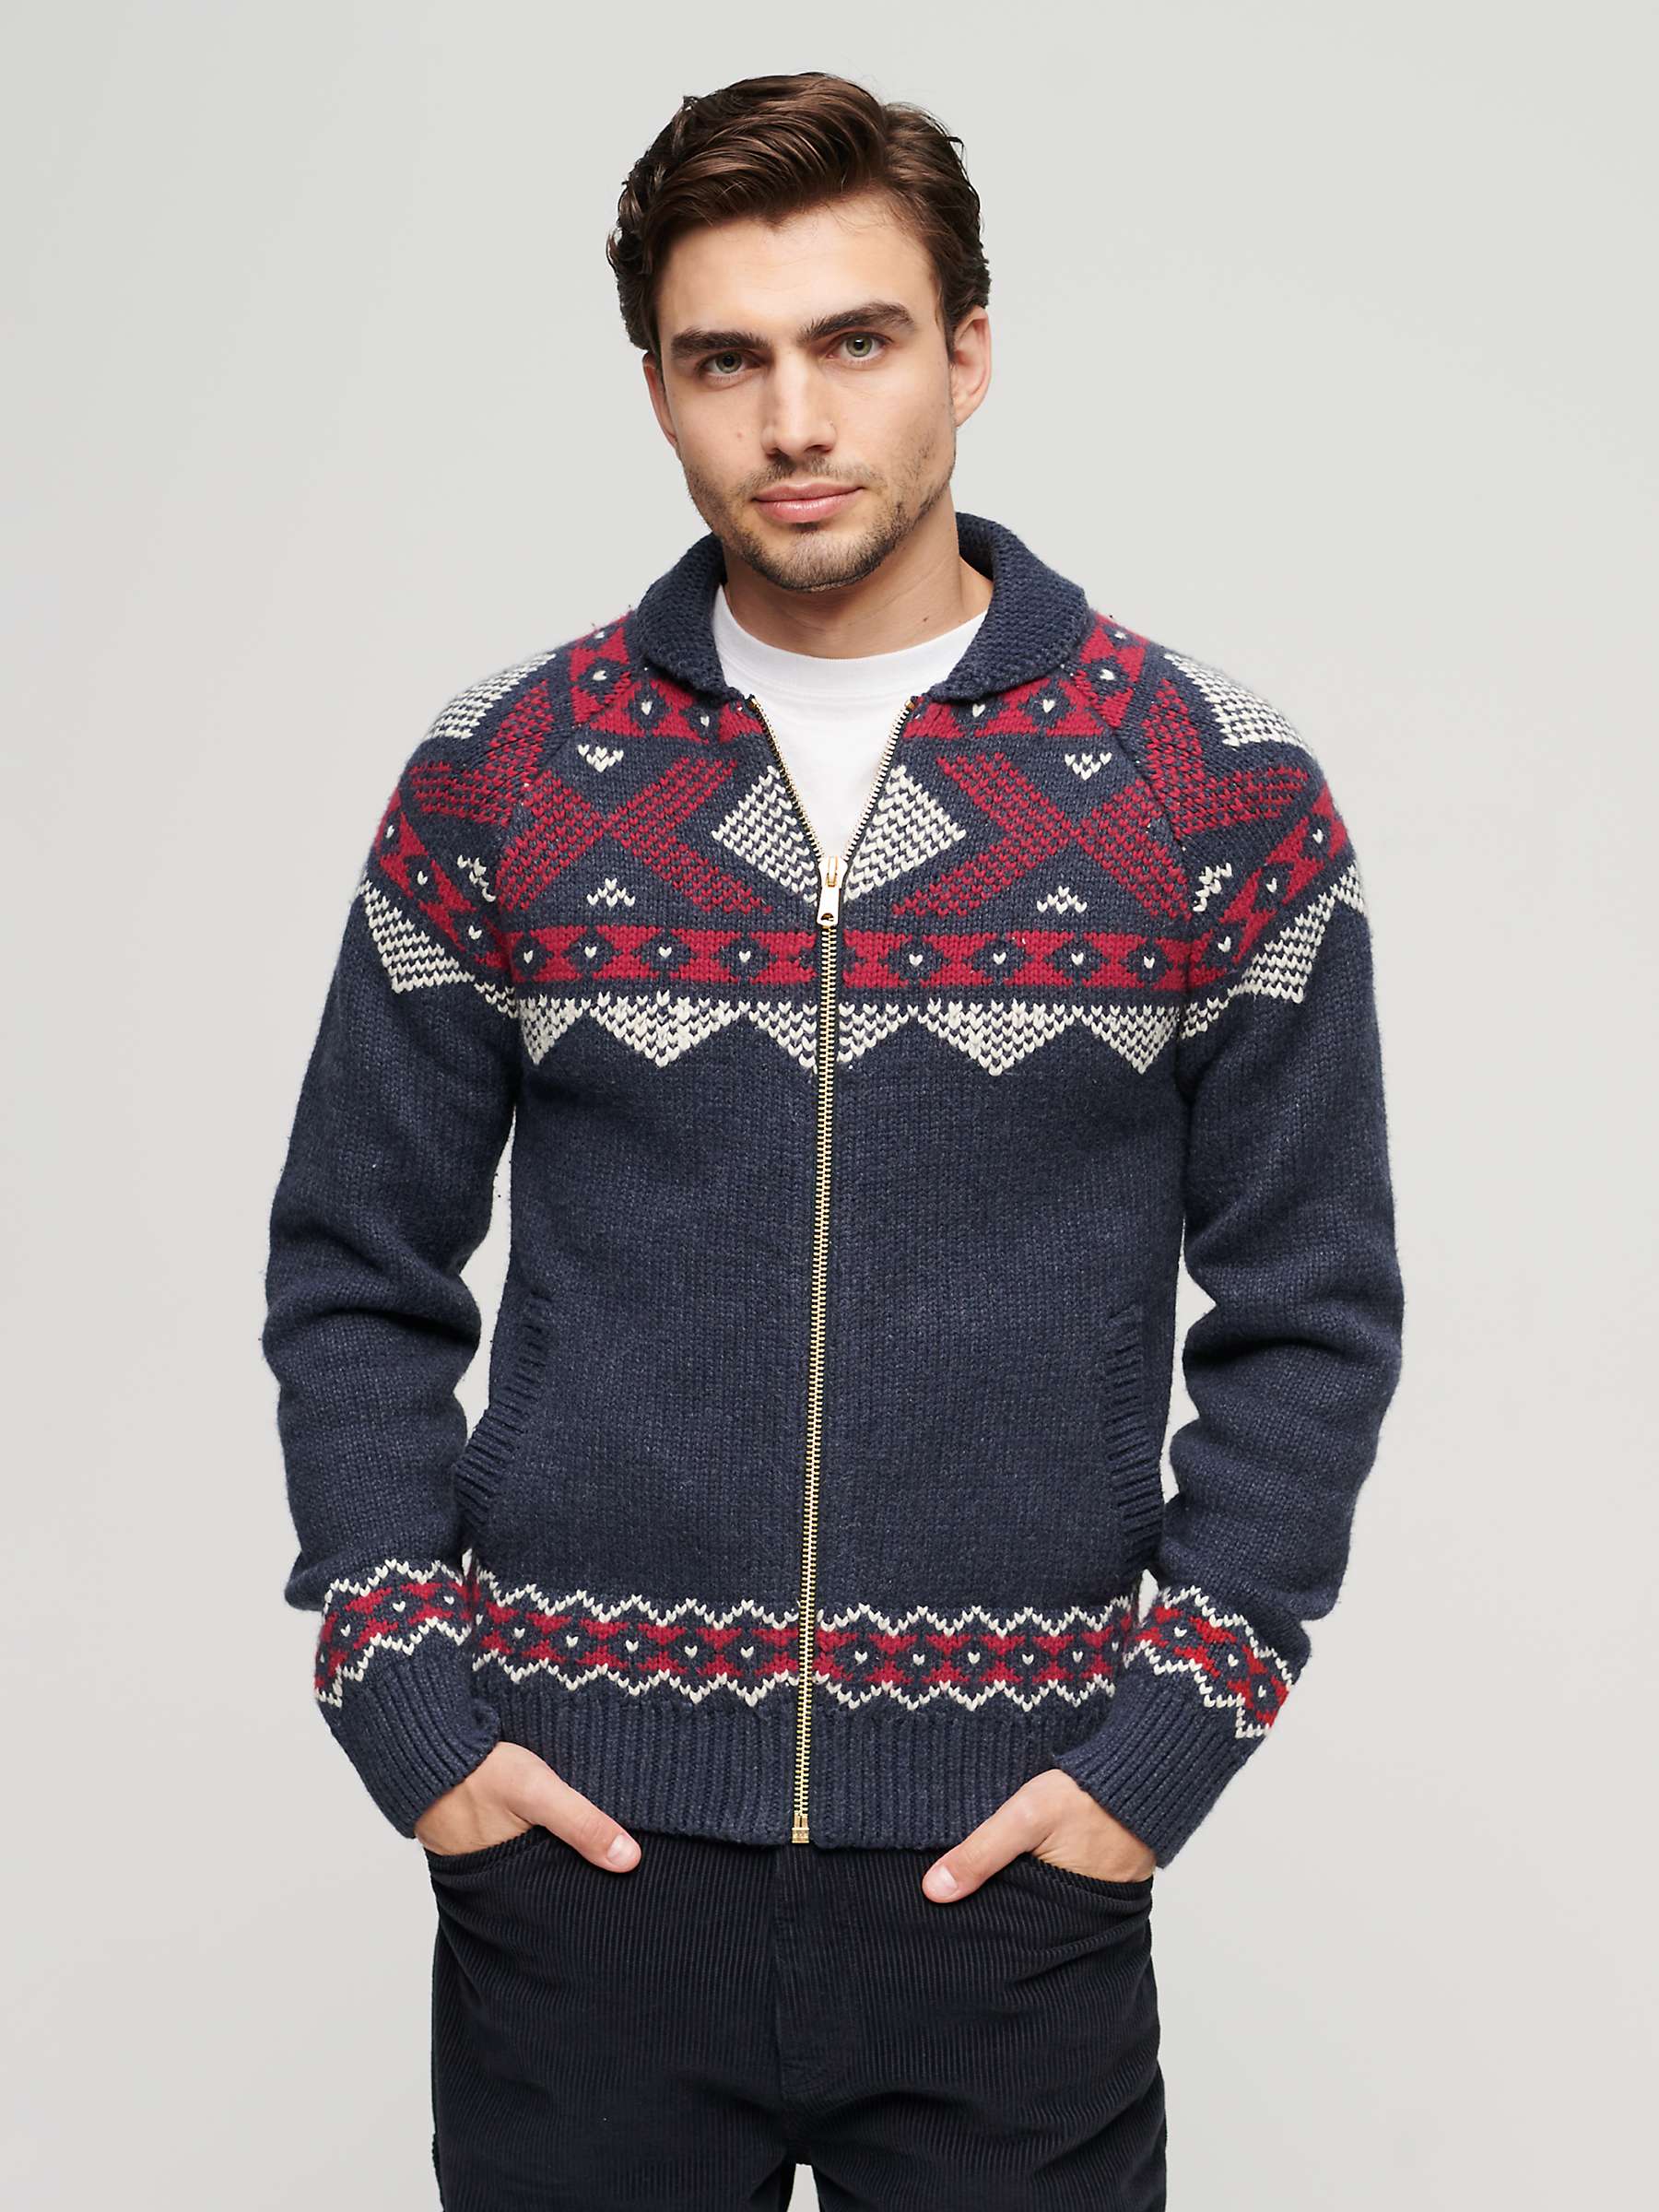 Buy Superdry Wool Blend Zip Thorugh Knitted Cardigan, Navy/Multi Online at johnlewis.com